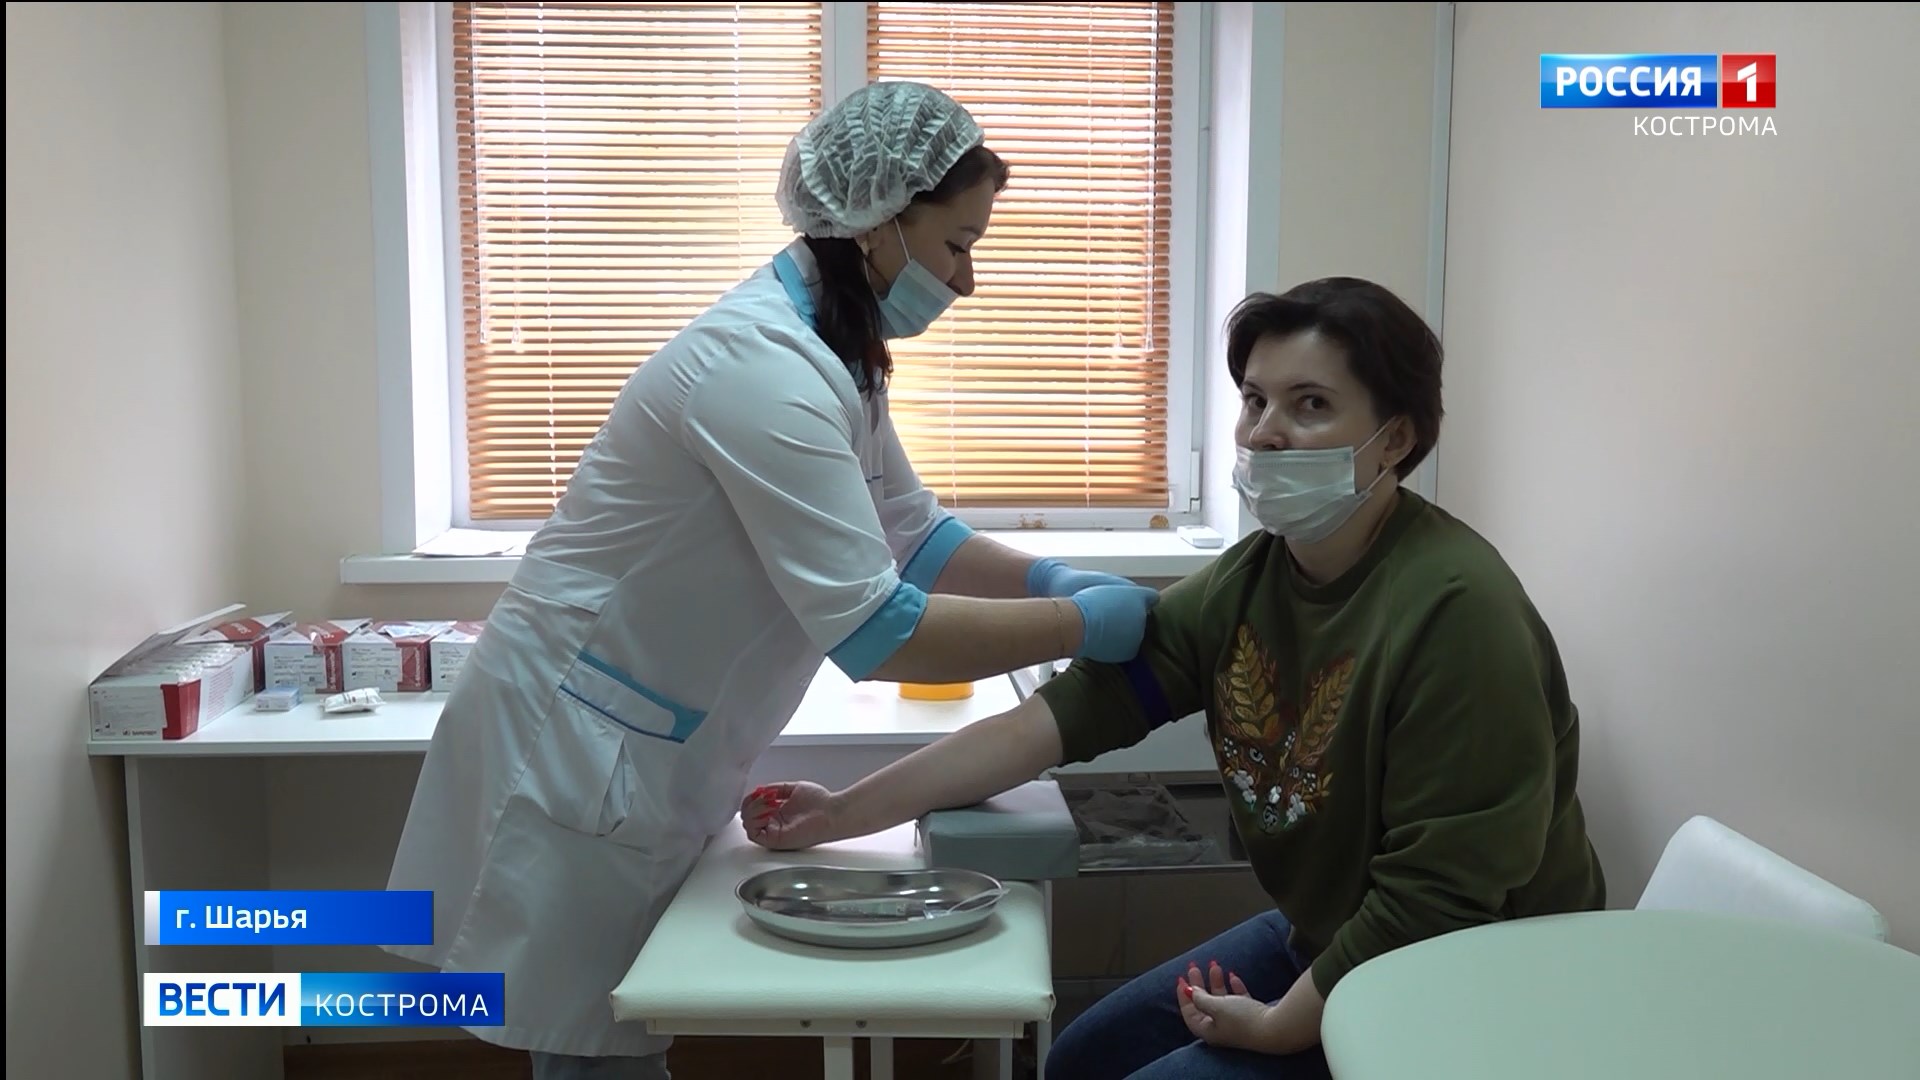 В Шарье открылся филиал Костромской клинико-диагностической лаборатории